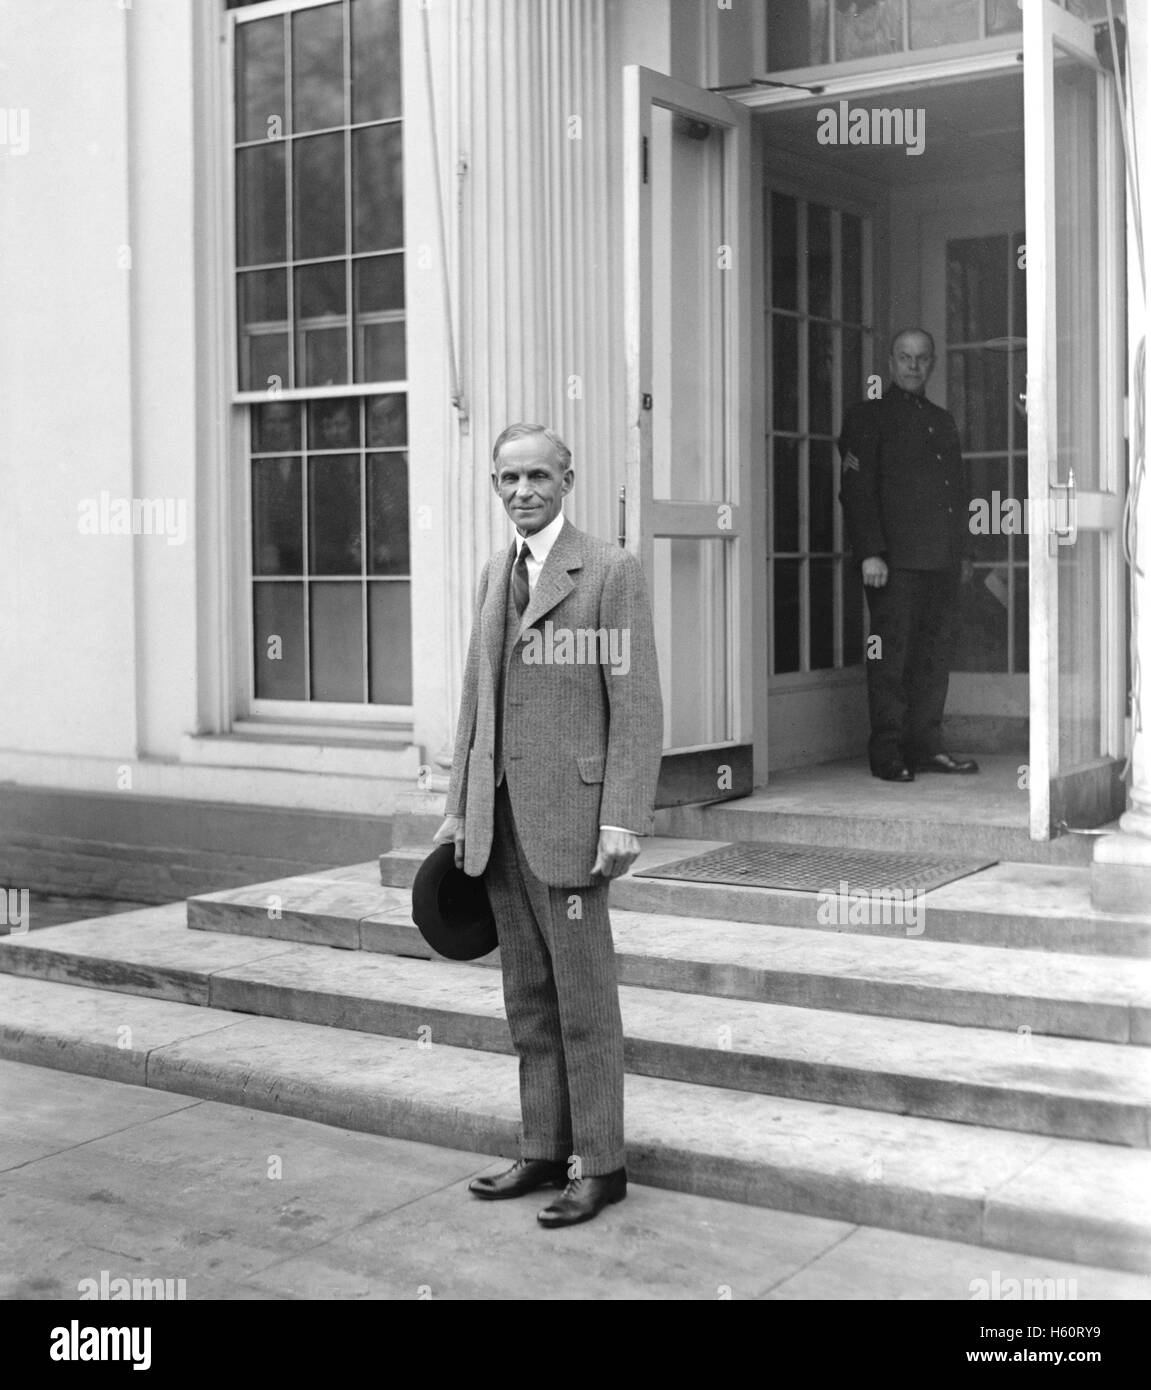 Henry Ford a quitté la Maison Blanche, Washington DC, USA, National Photo Company, Février 1927 Banque D'Images